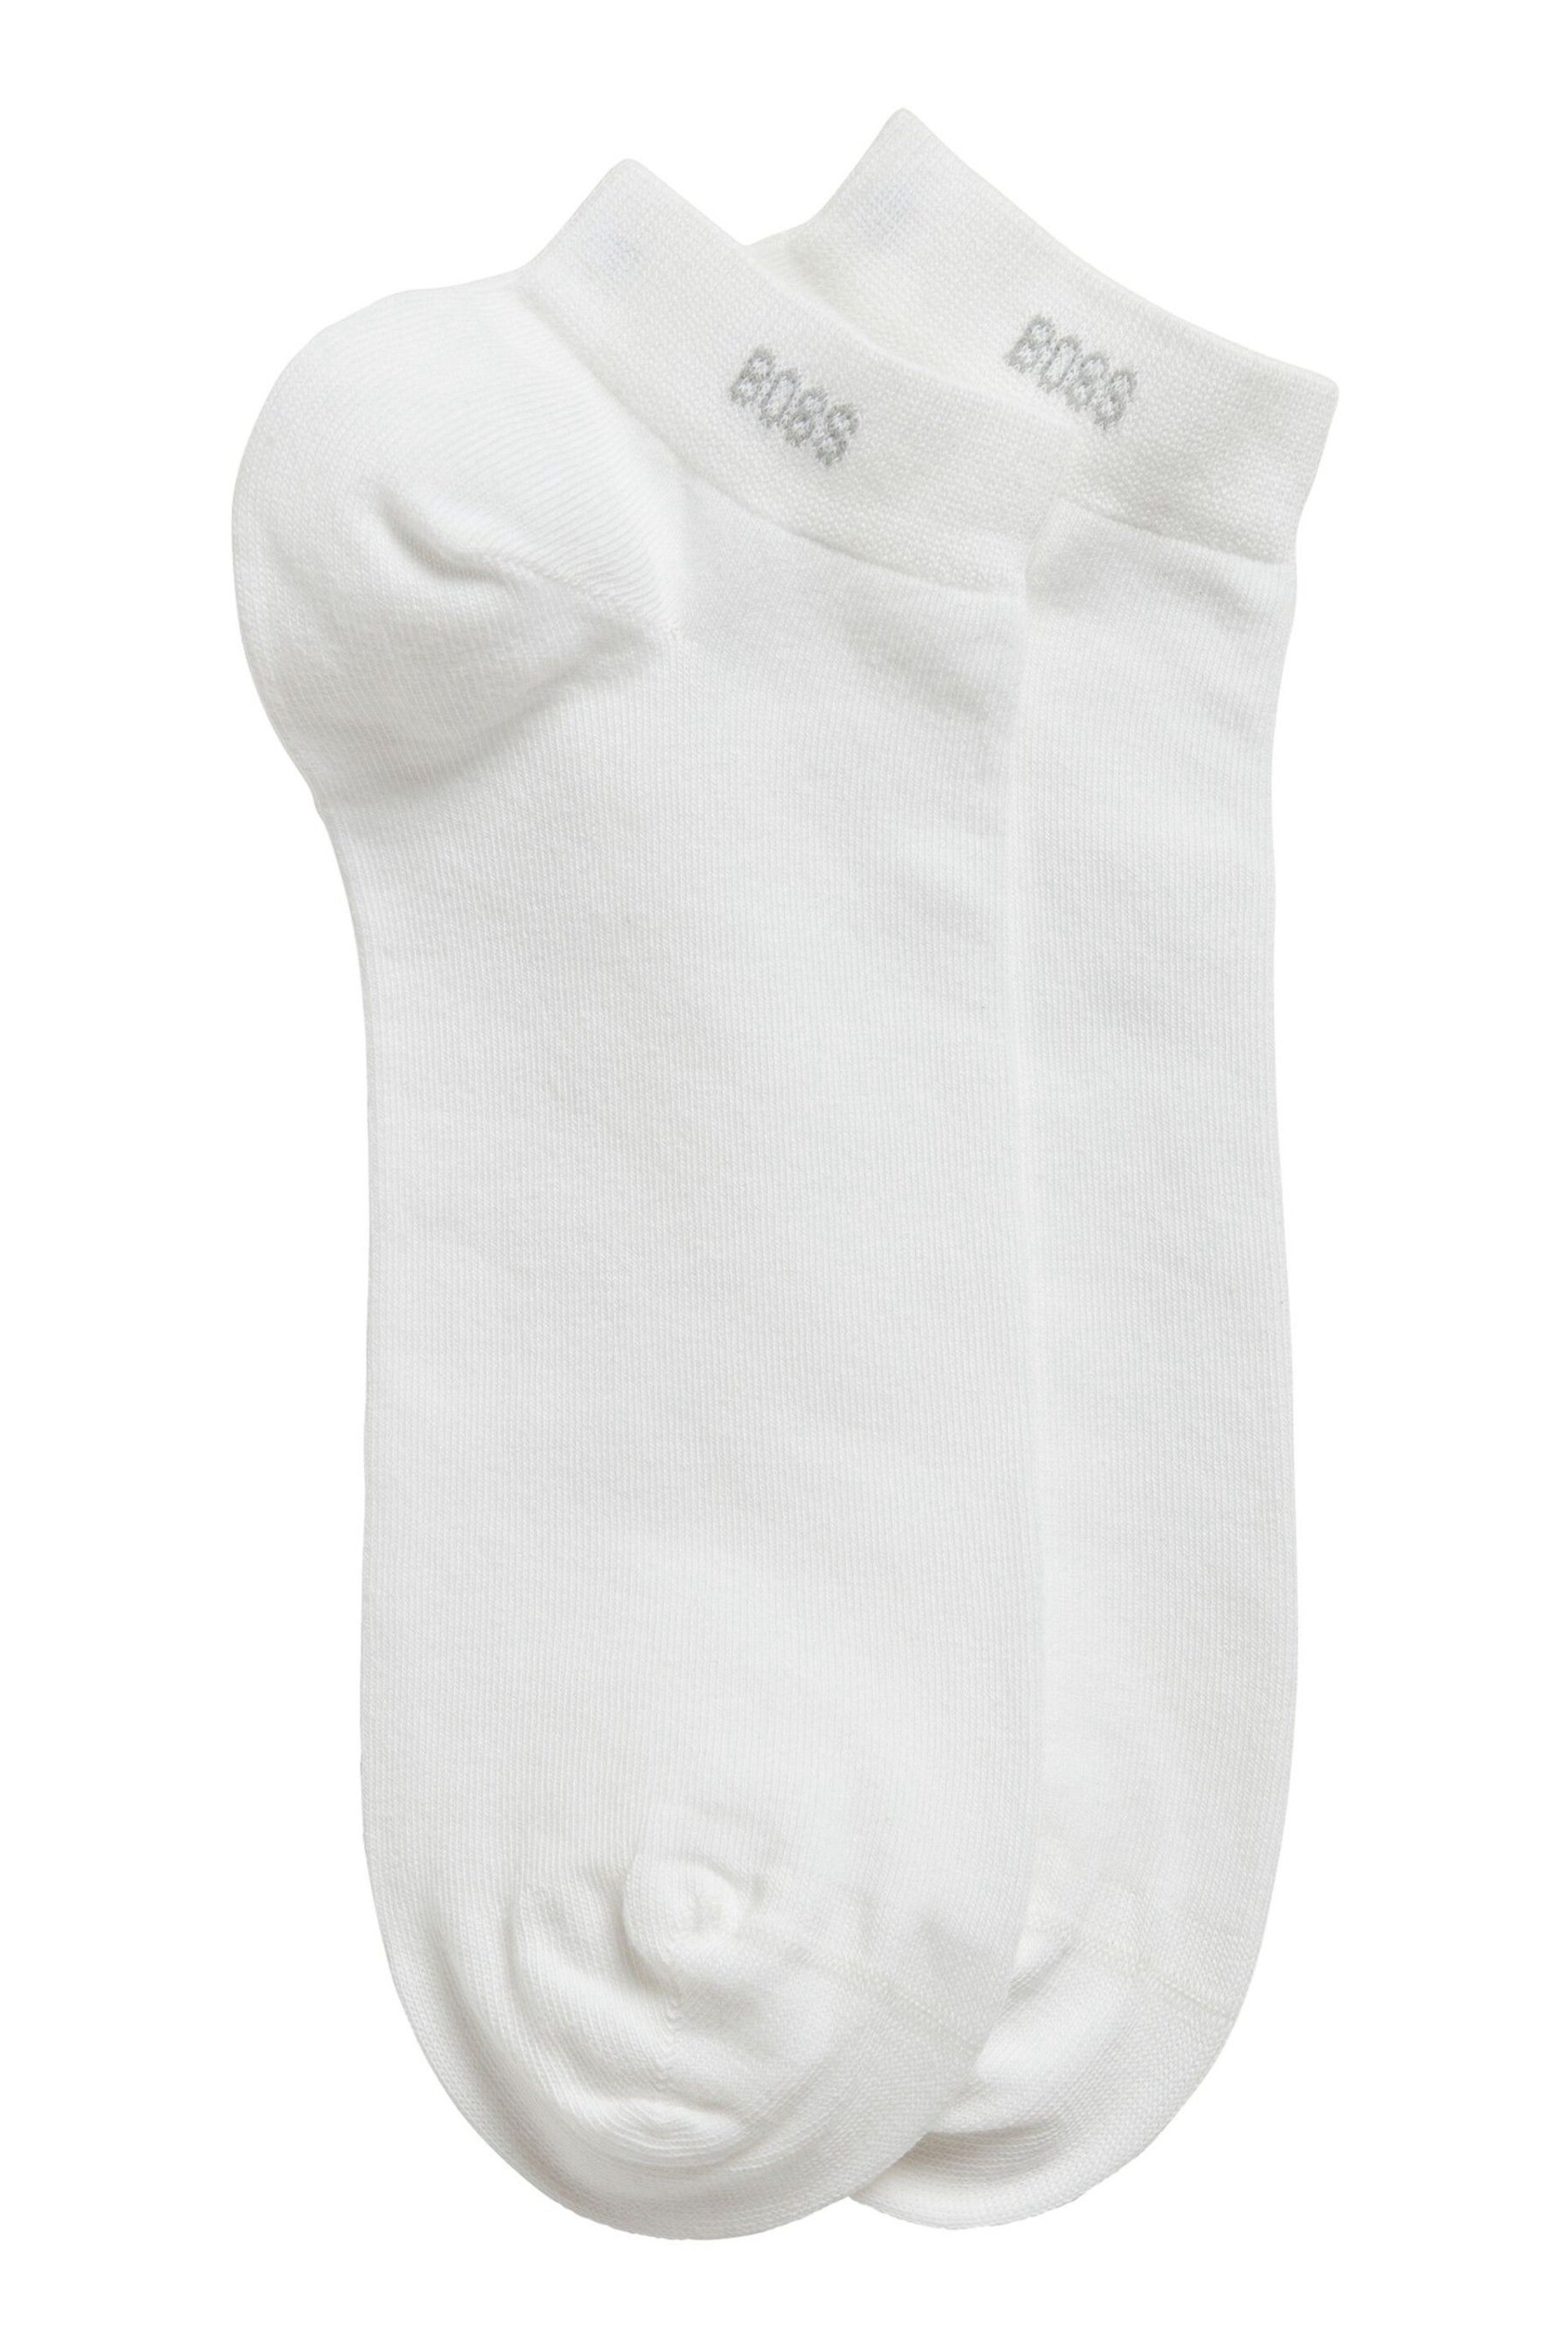 BOSS White Ankle Socks 2 Pack - Image 1 of 2